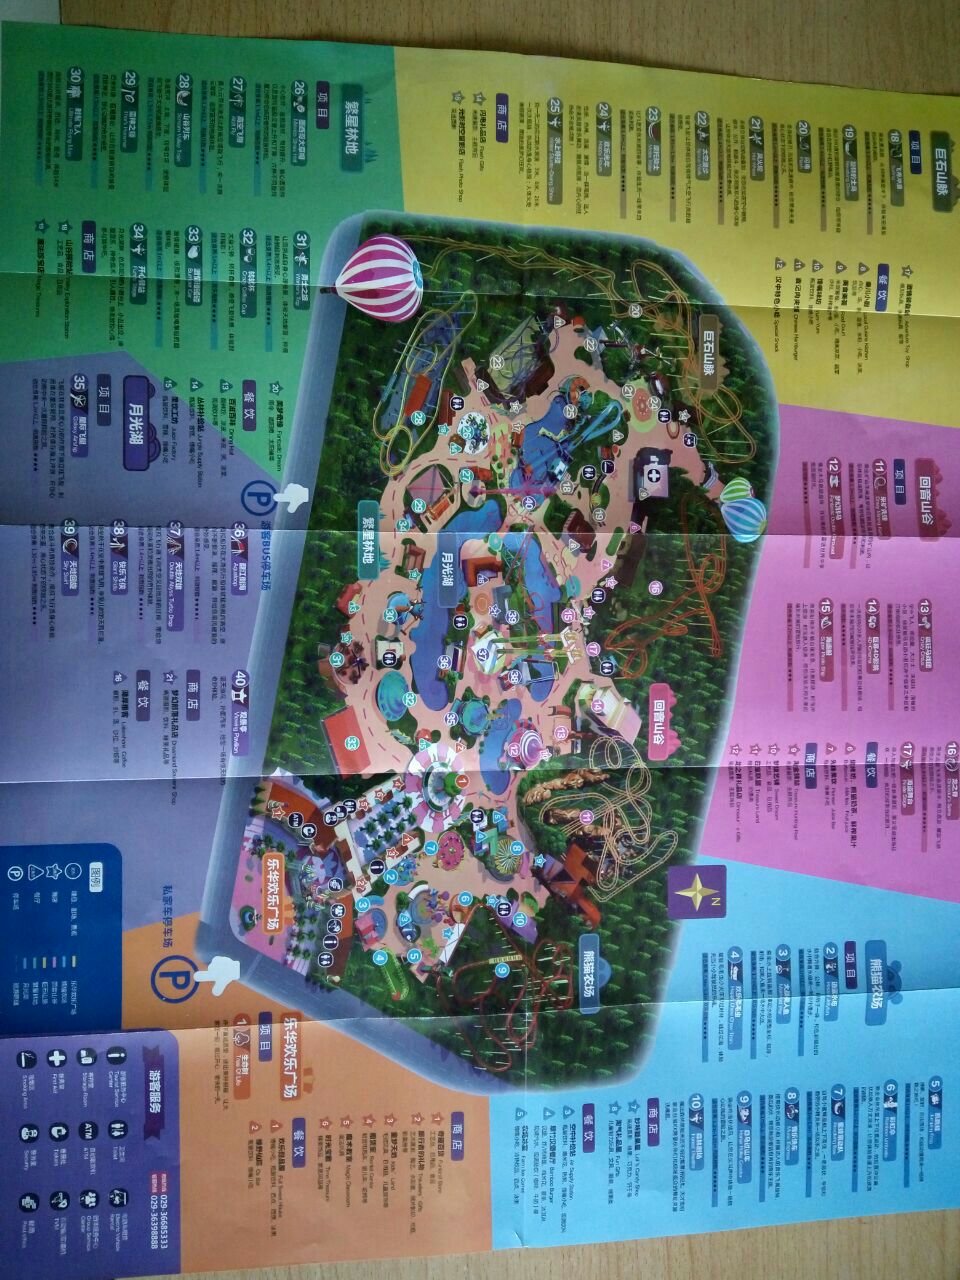 乐华城地图内部地图图片